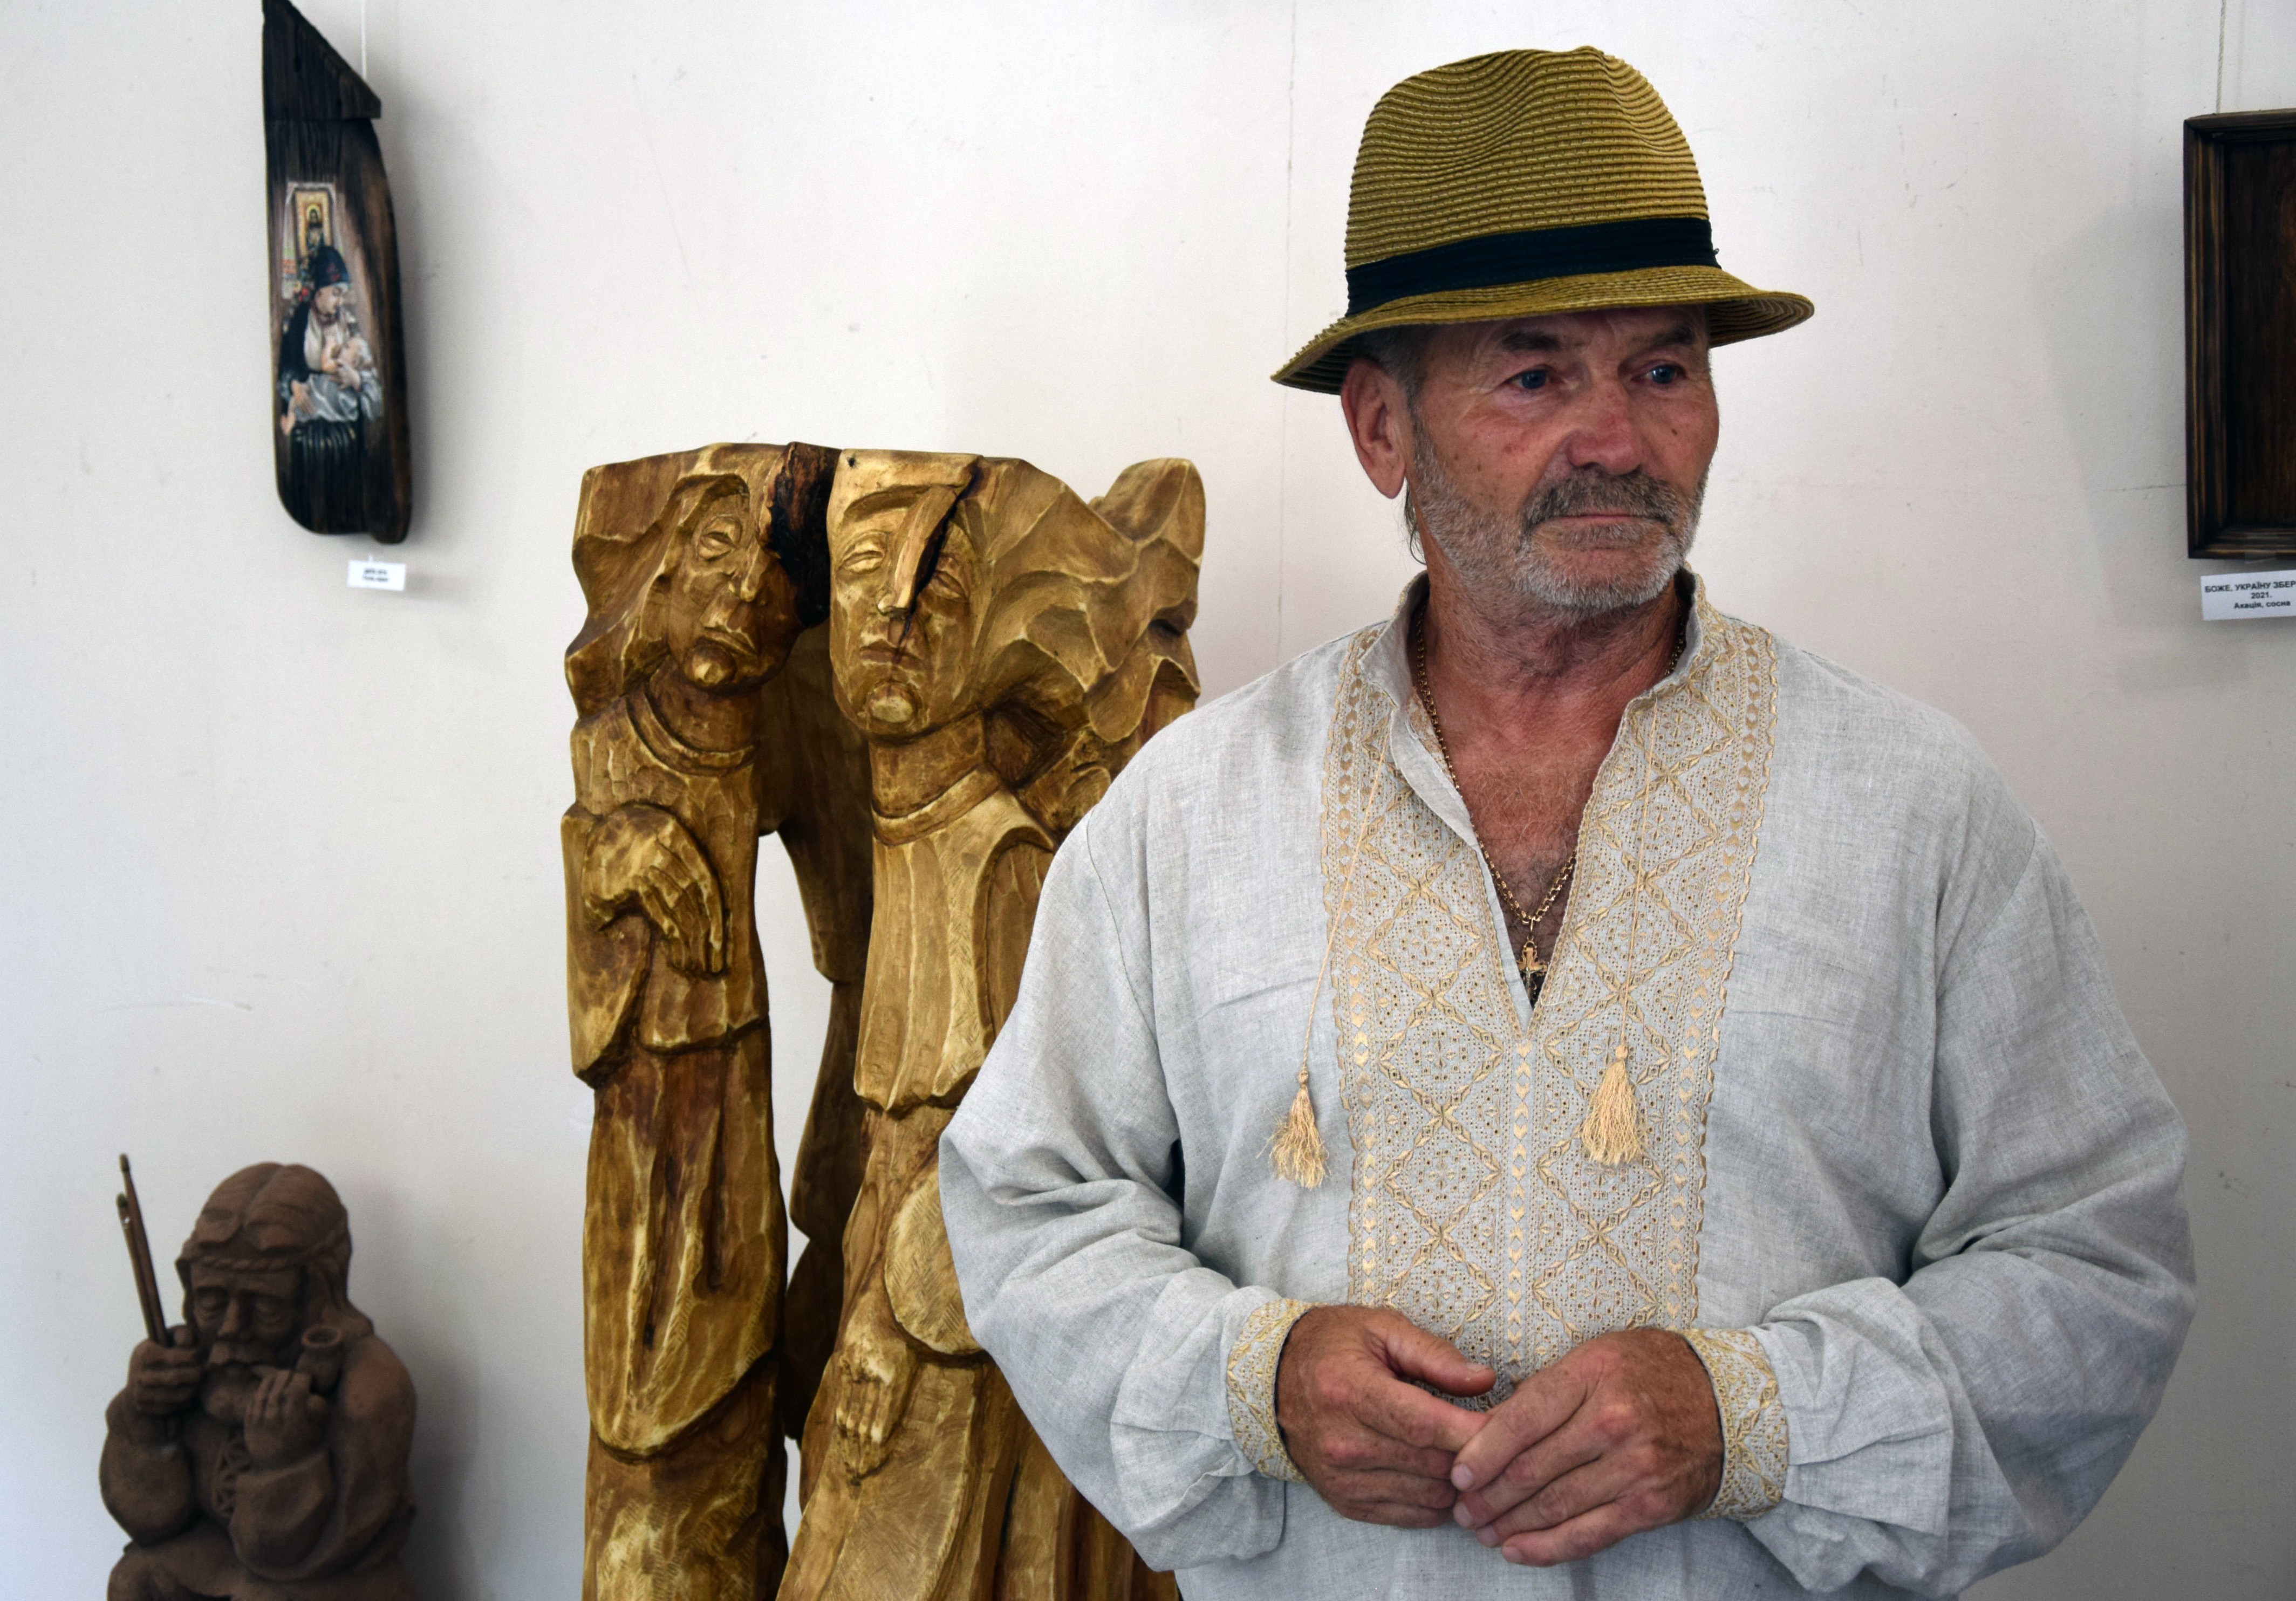 Майстер-різьбяр Віктор Боркута представив четверту персональну виставку робіт з дерева. Фото автора